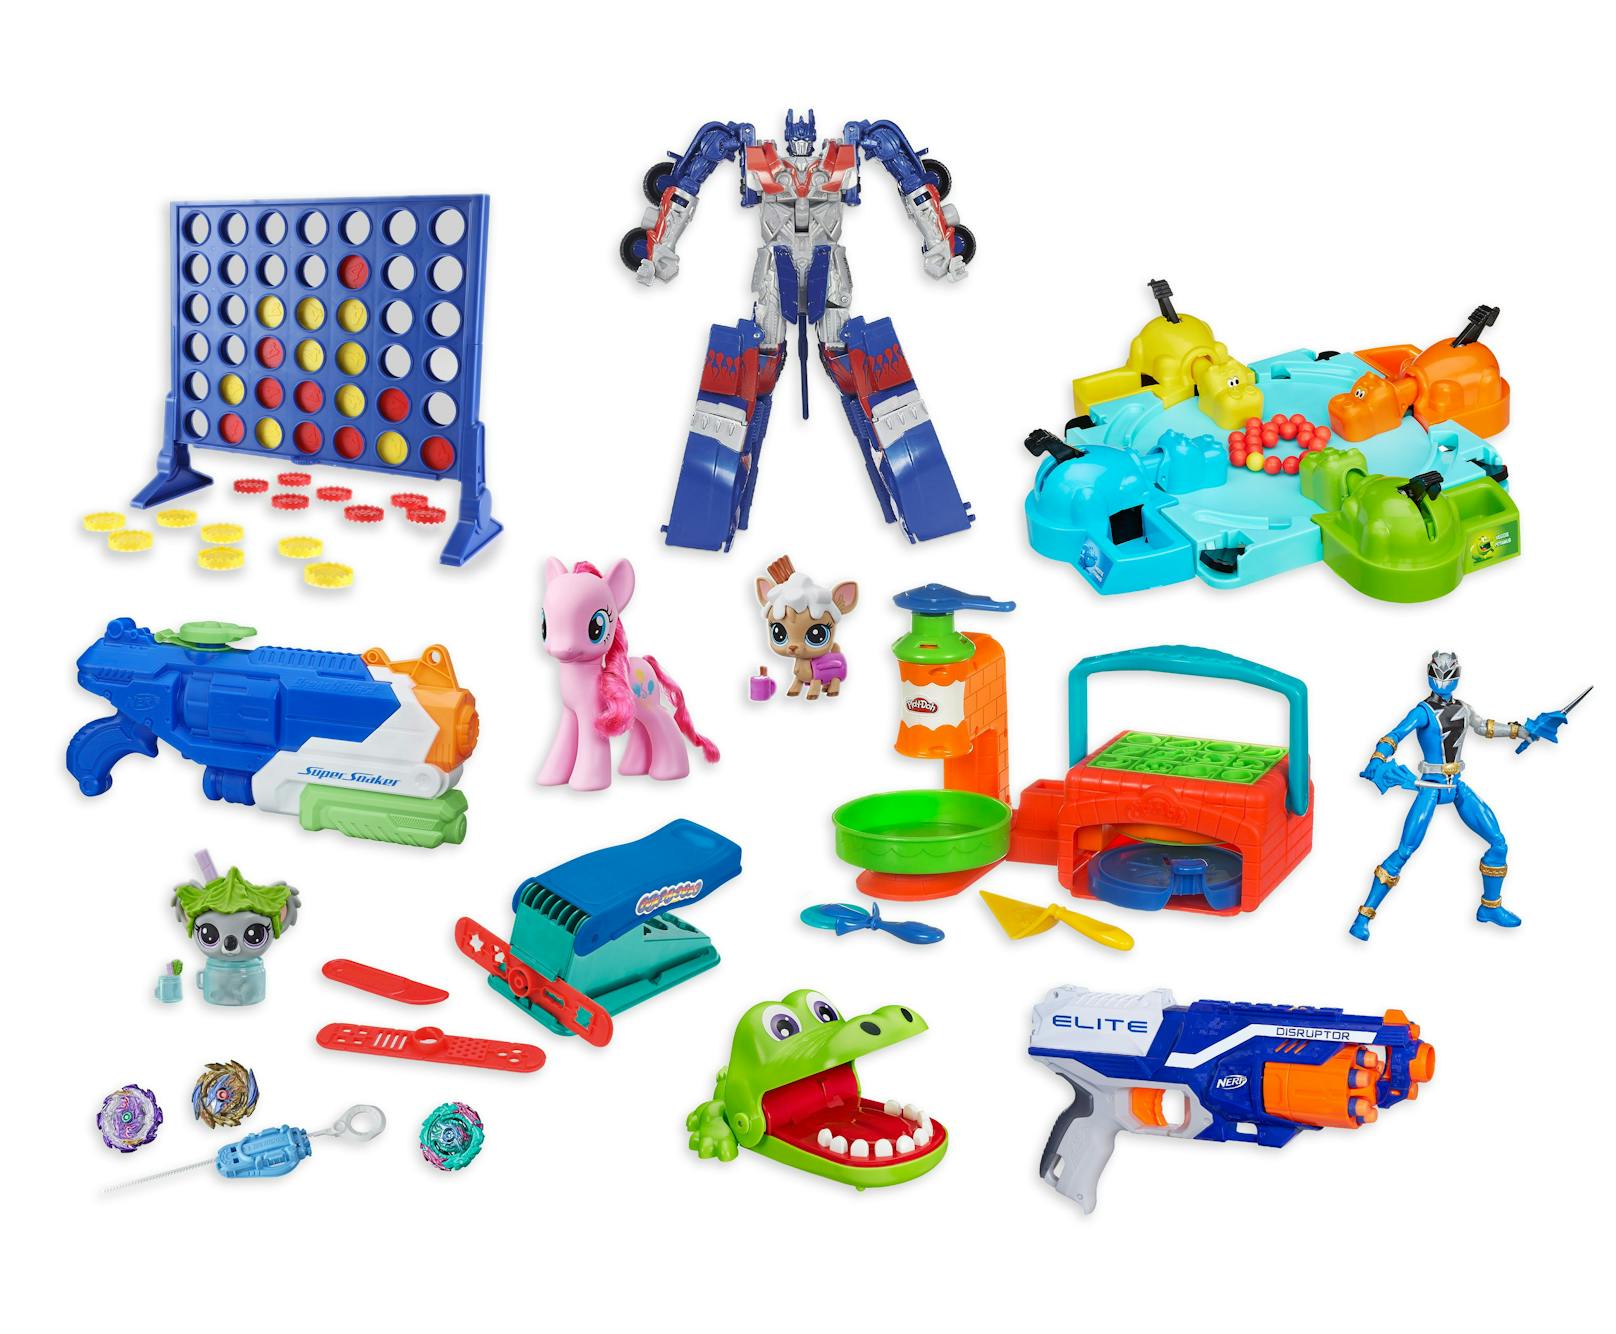 Im Rahmen des Hasbro Spielzeug Recycling Programms können ab sofort alle kaputten Spielzeuge und Spiele des Herstellers, die nicht batteriebetrieben sind, auch in Österreich und der Schweiz zur Wiederverwertung zurückgegeben werden. 